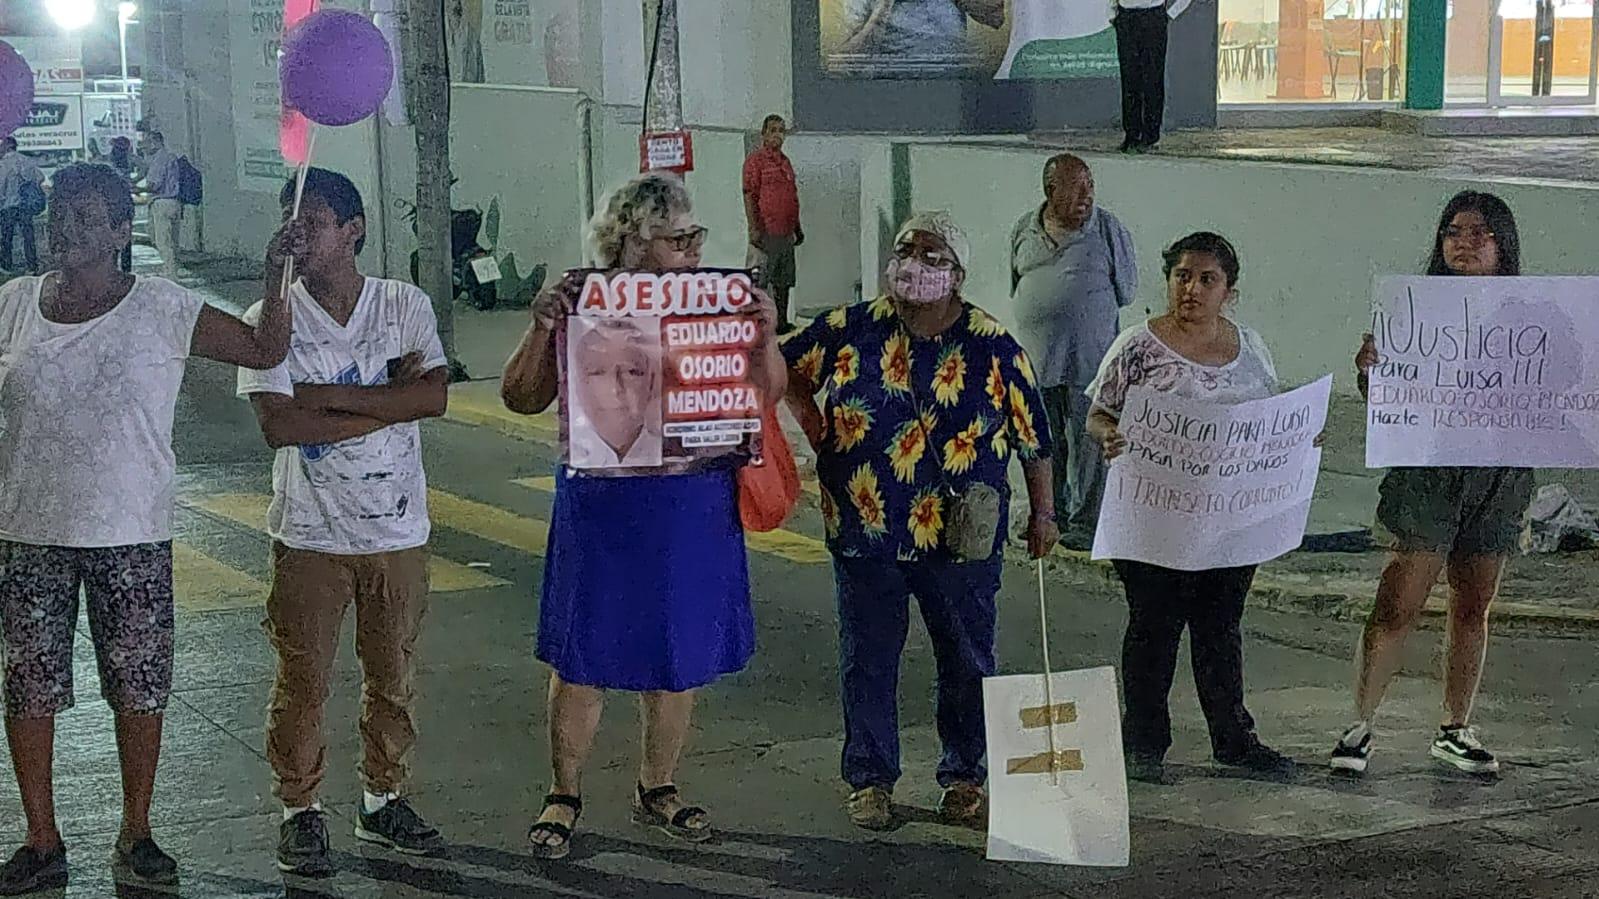 Autoridades se vendieron: Exigen justicia para María Luisa en Boca del Río